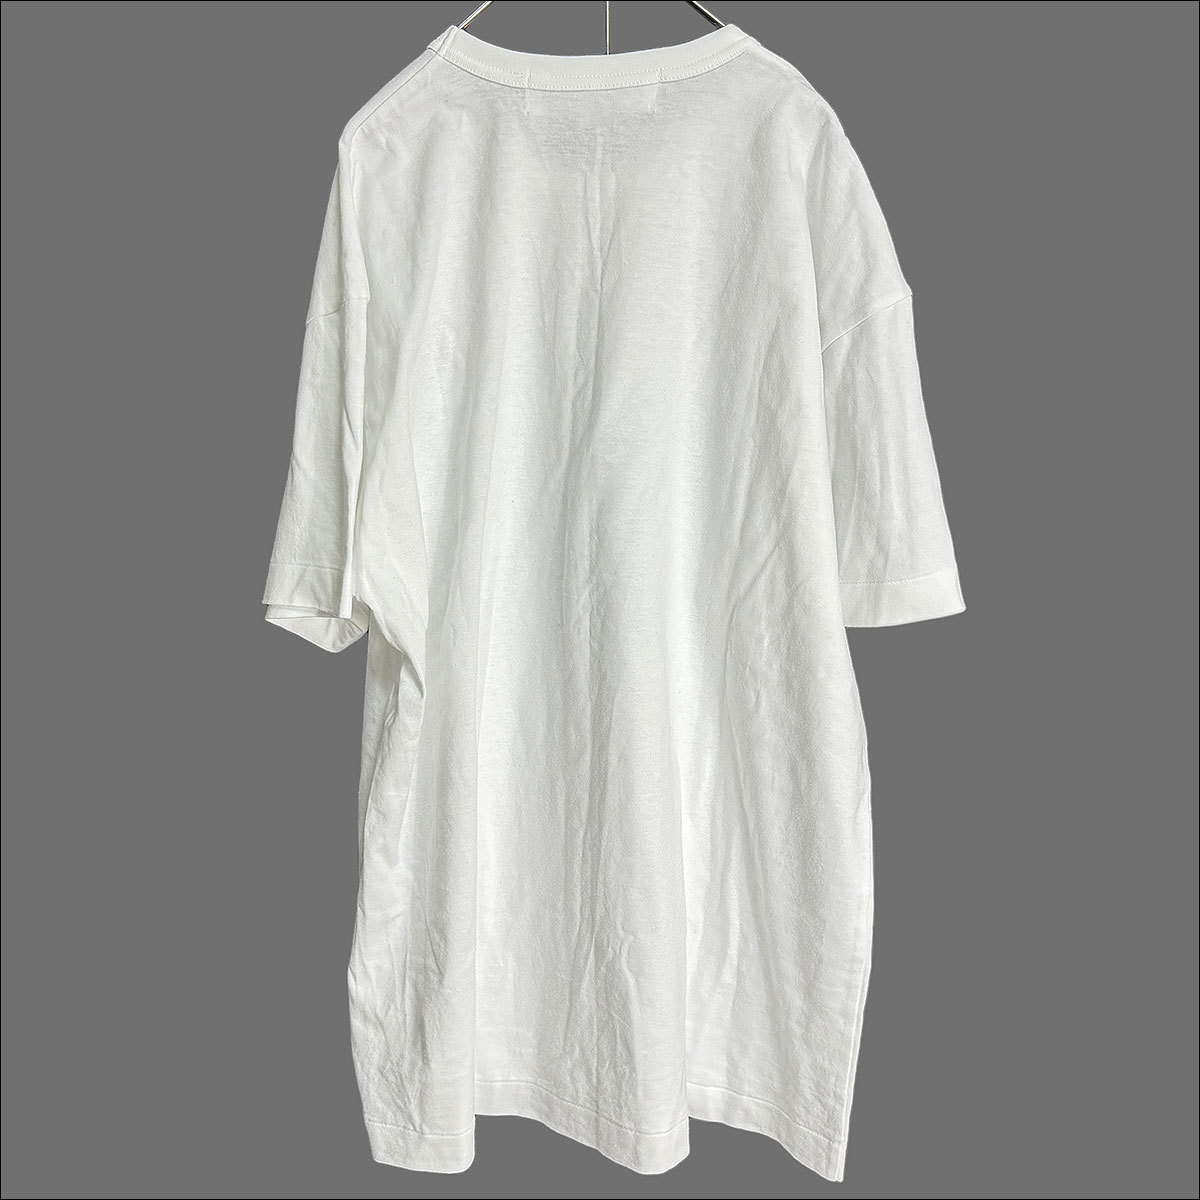 J5156 美品 プレイコムデギャルソン 23SS 即完売品 希少サイズ ハートワッペン Tシャツ ホワイト XXL PLAY COMME des GARCONS_画像3